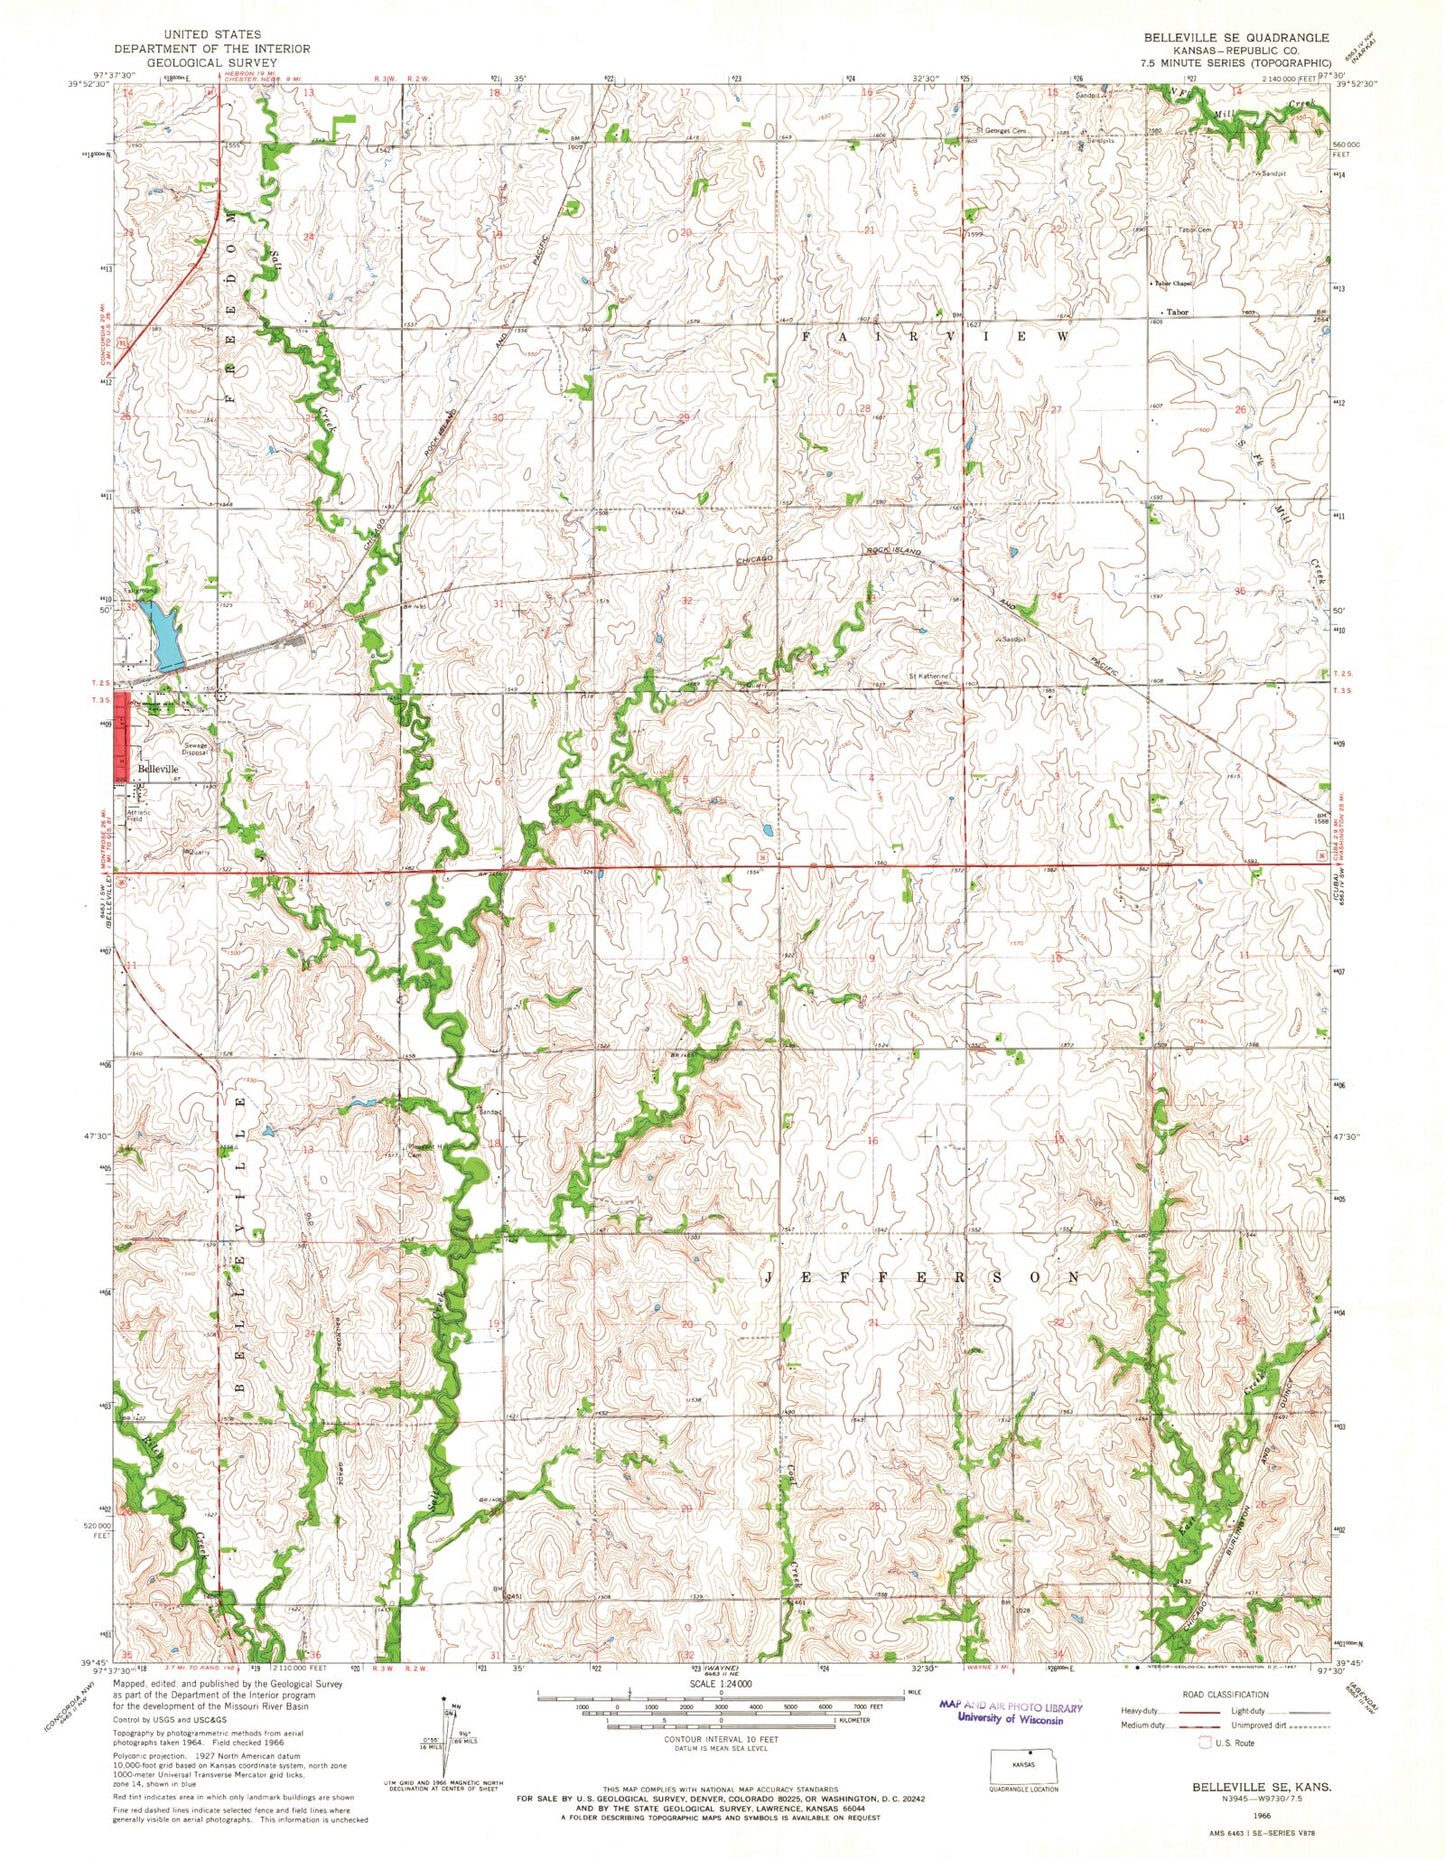 Classic USGS Belleville SE Kansas 7.5'x7.5' Topo Map Image